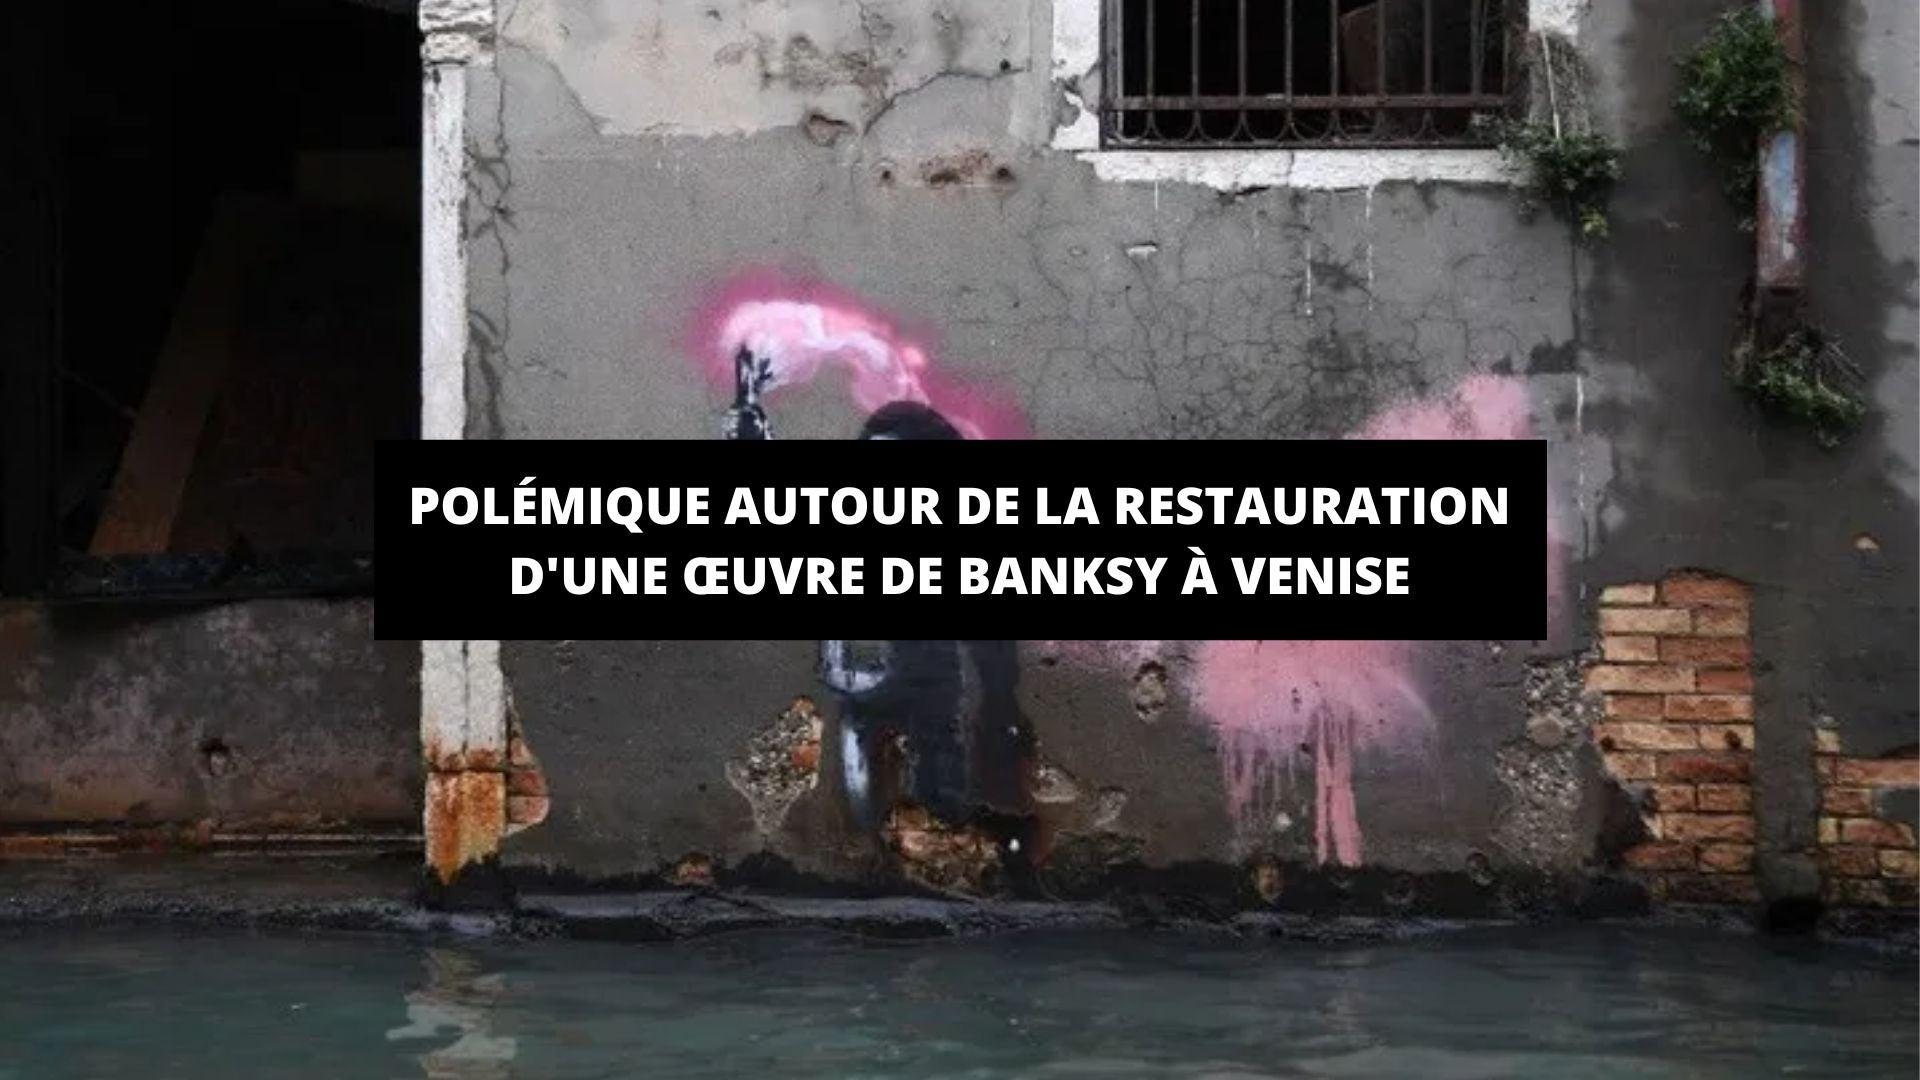 Polémique autour de la restauration d'une œuvre de Banksy à Venise - The Art Avenue